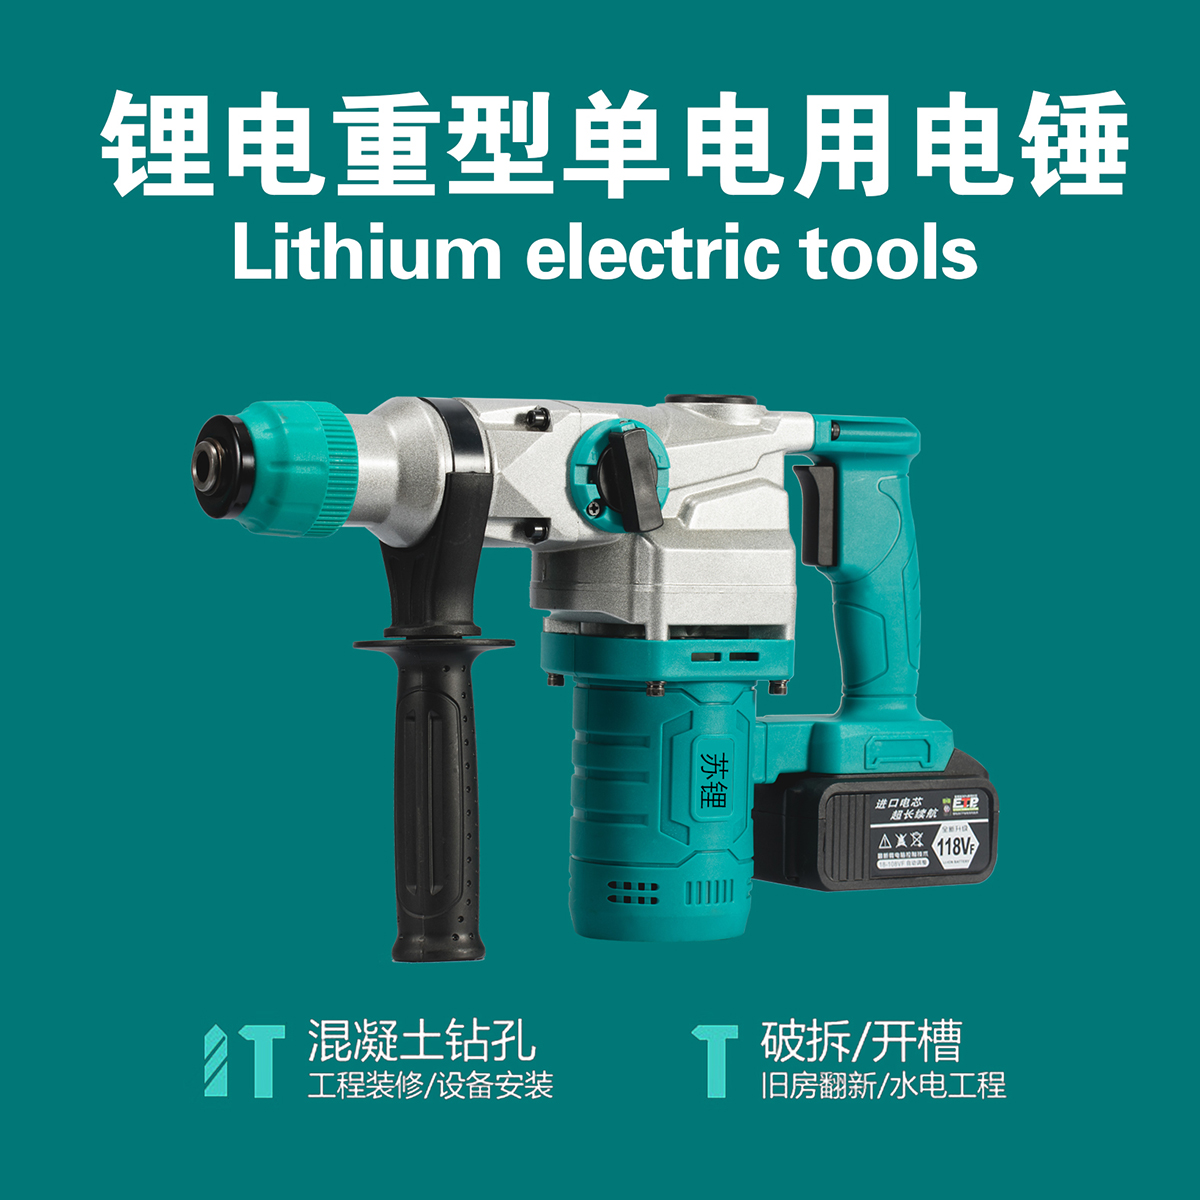 Lithium electric tools